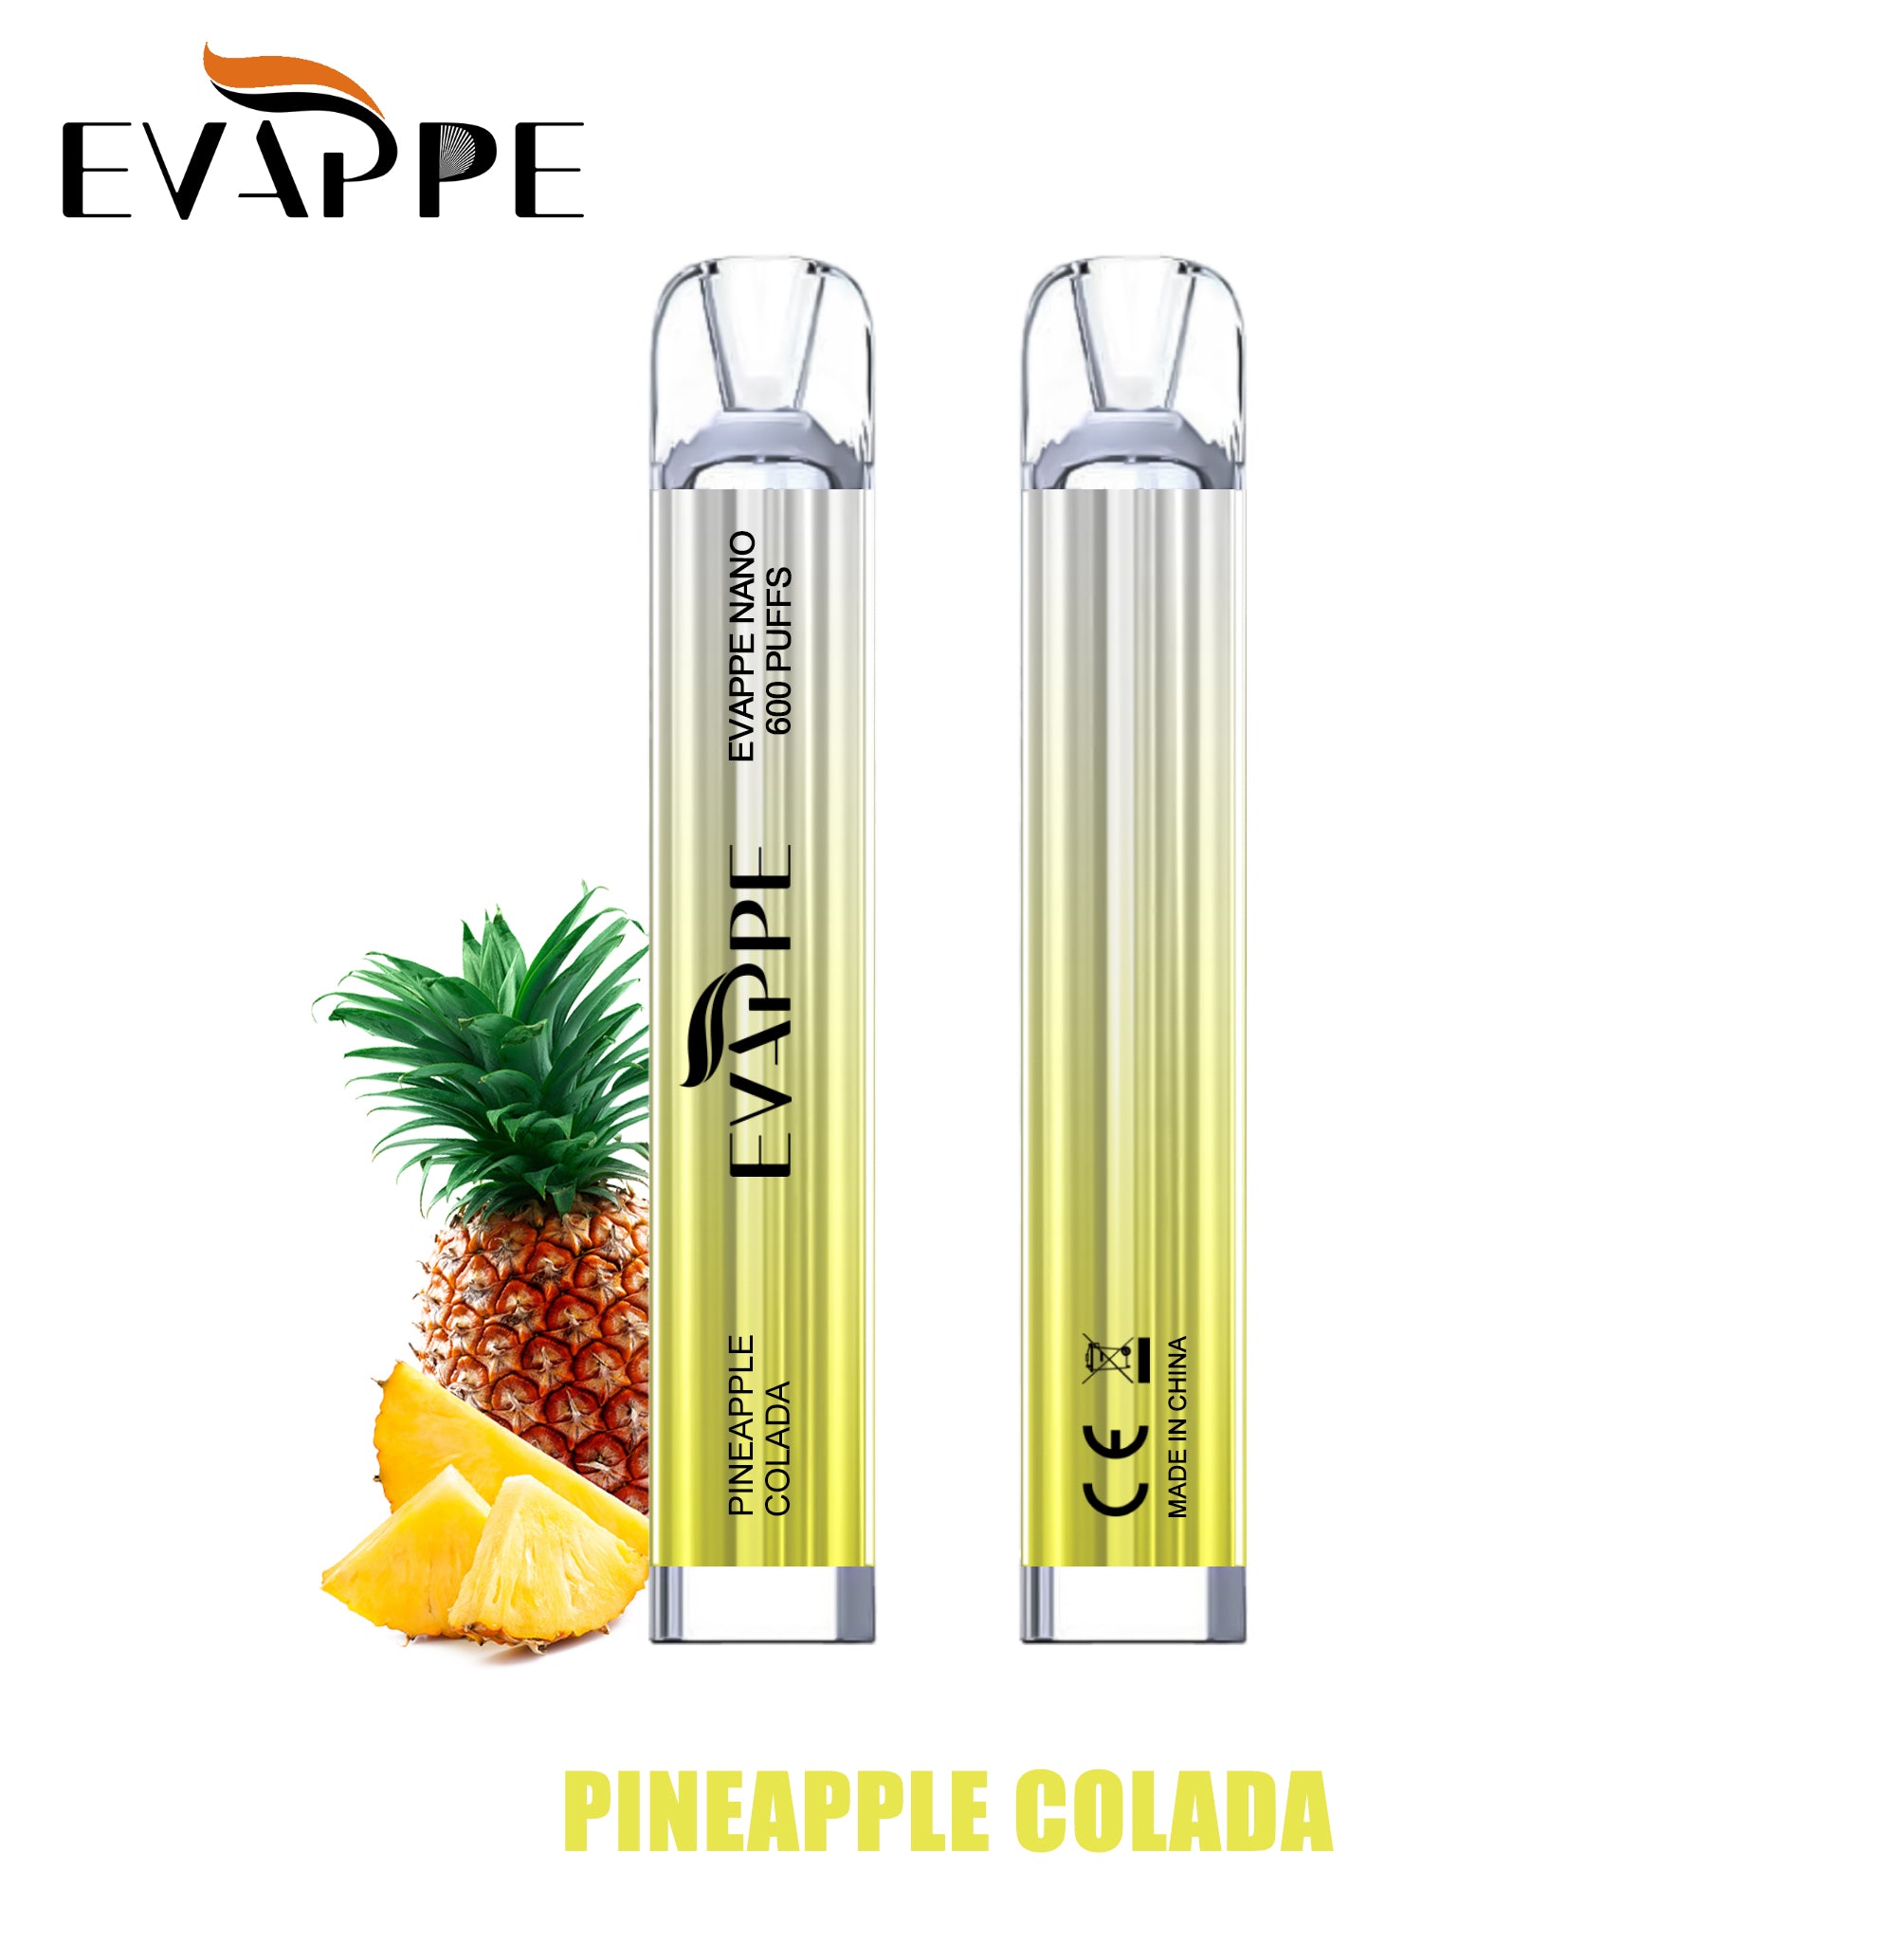 Evappe Nano Pineapple Colada 600